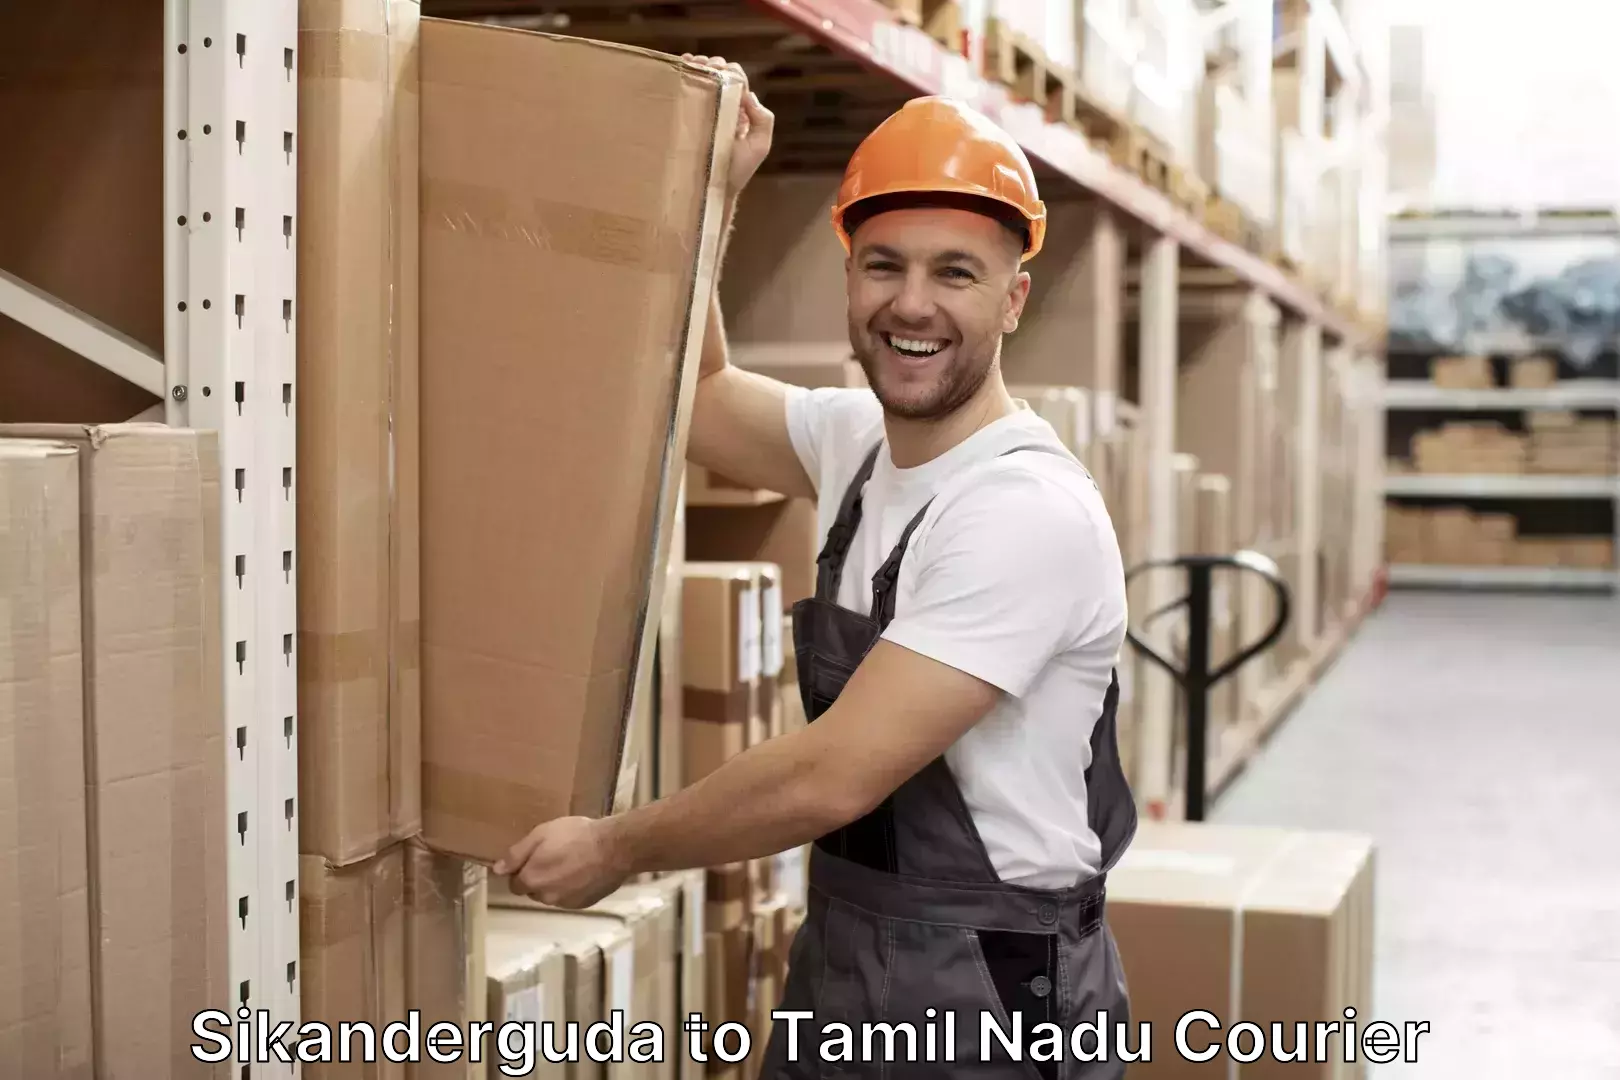 High-quality baggage shipment Sikanderguda to Tamil Nadu